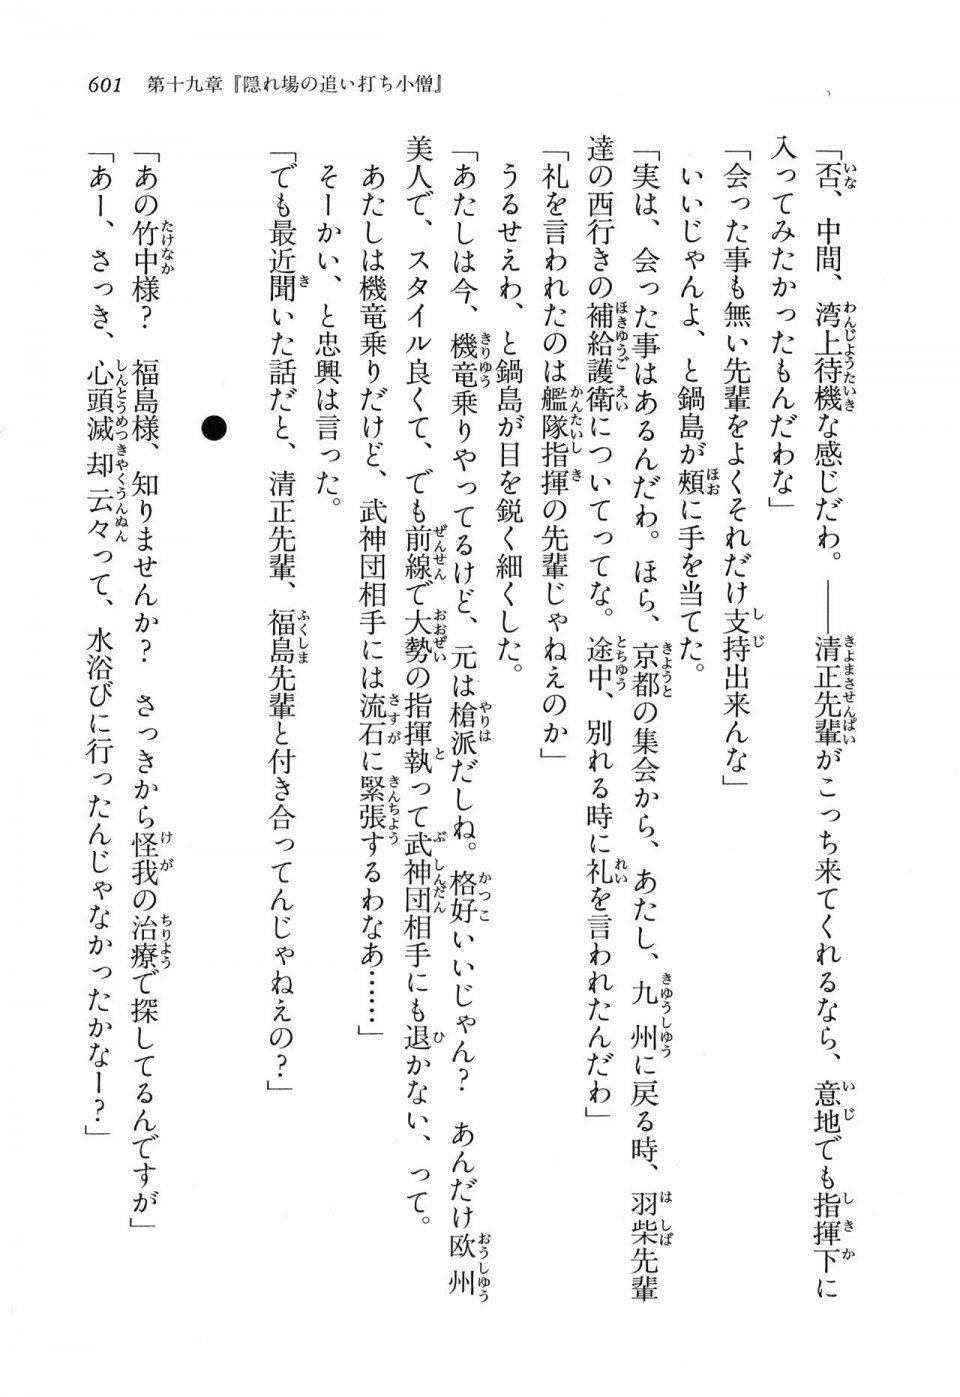 Kyoukai Senjou no Horizon LN Vol 16(7A) - Photo #601